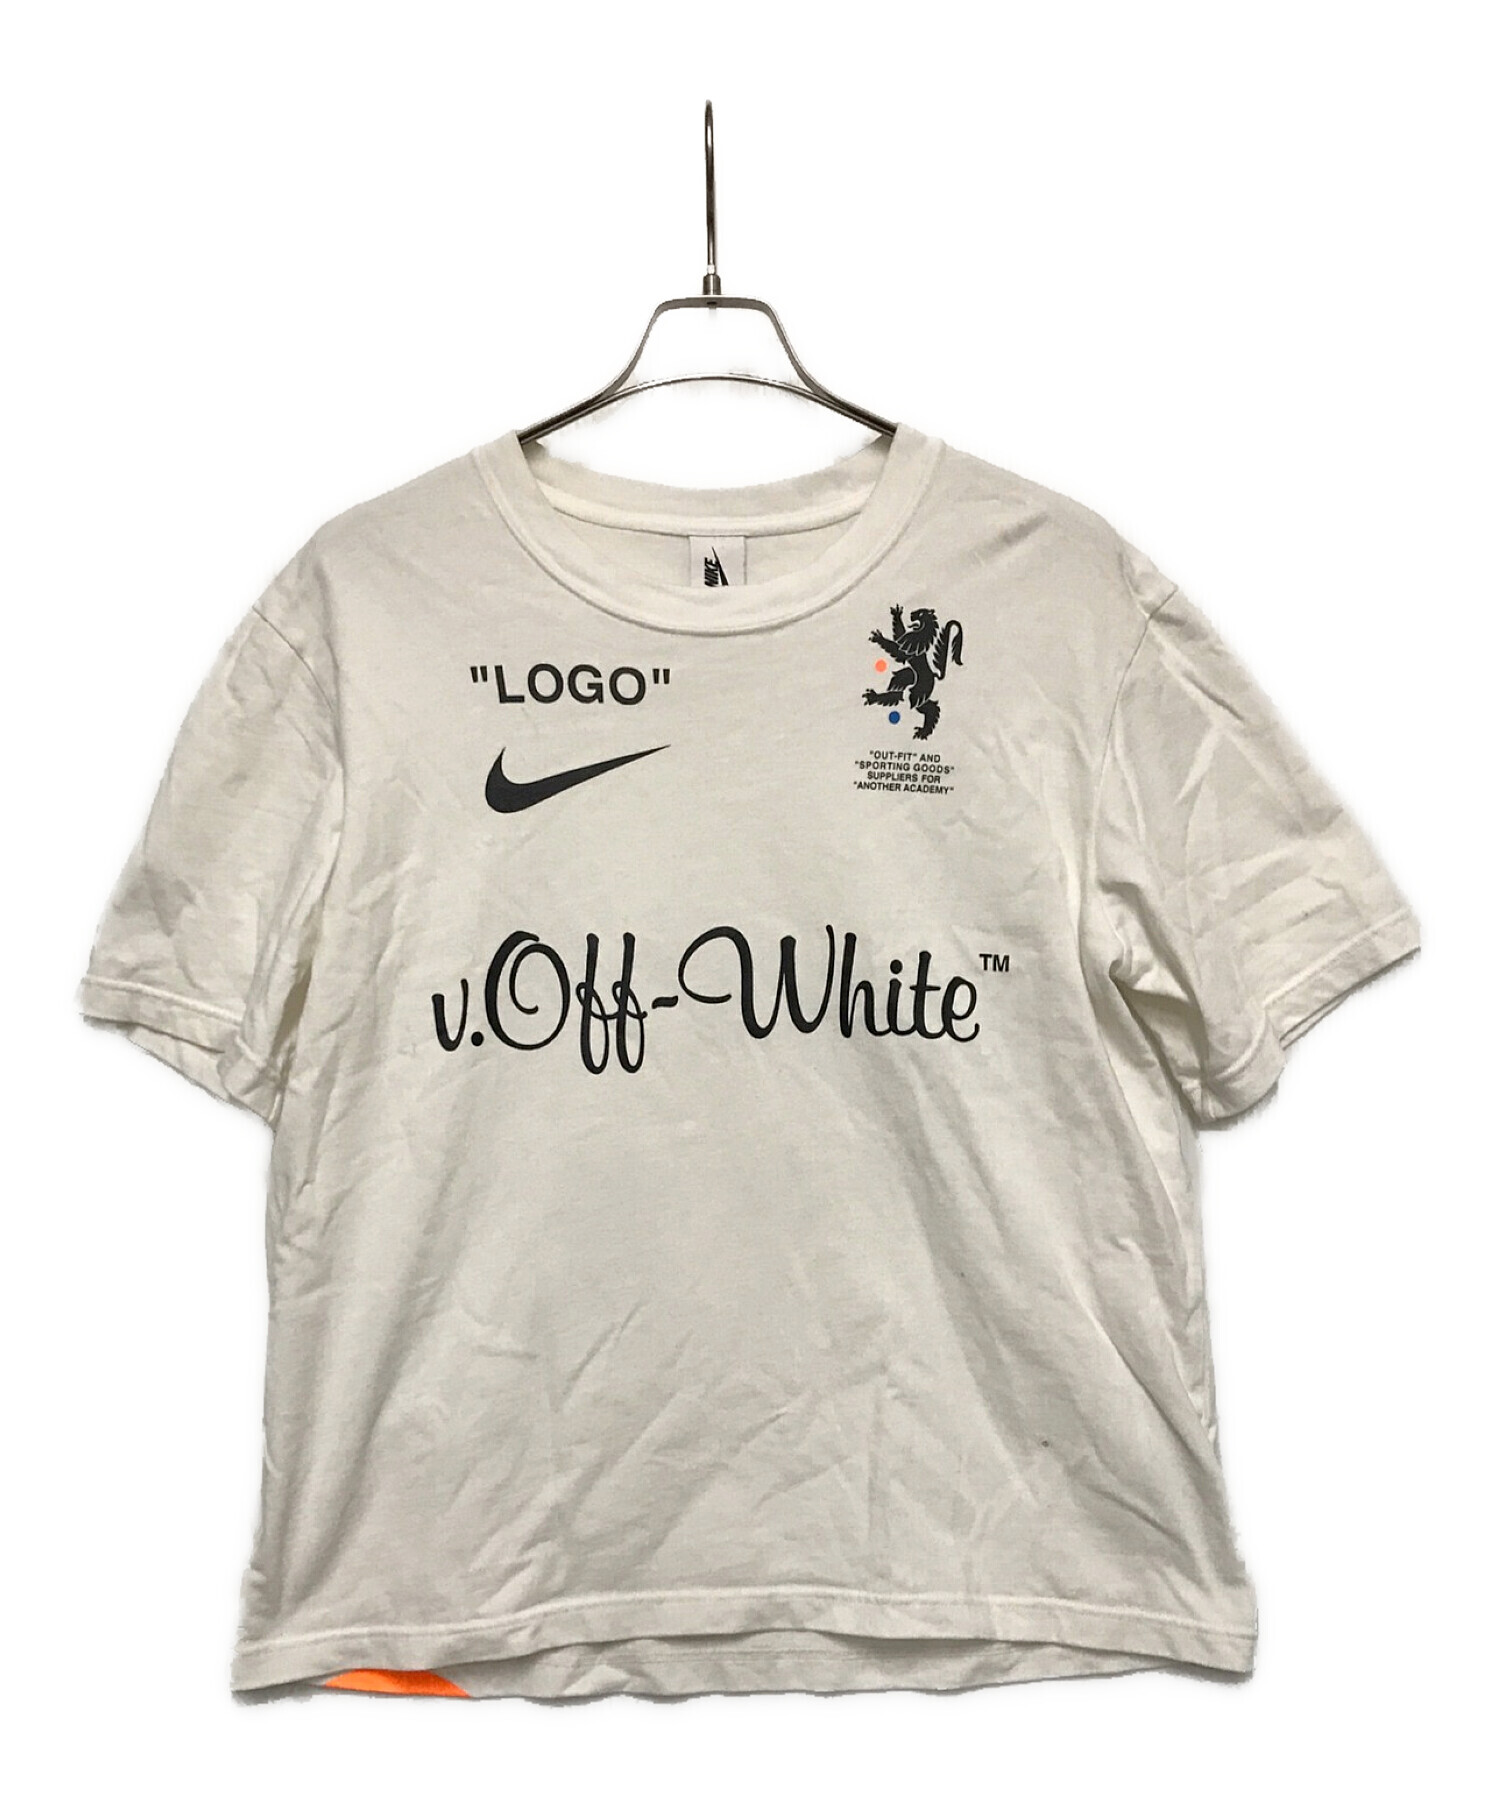 新品XS ナイキ オフホワイト Tシャツ